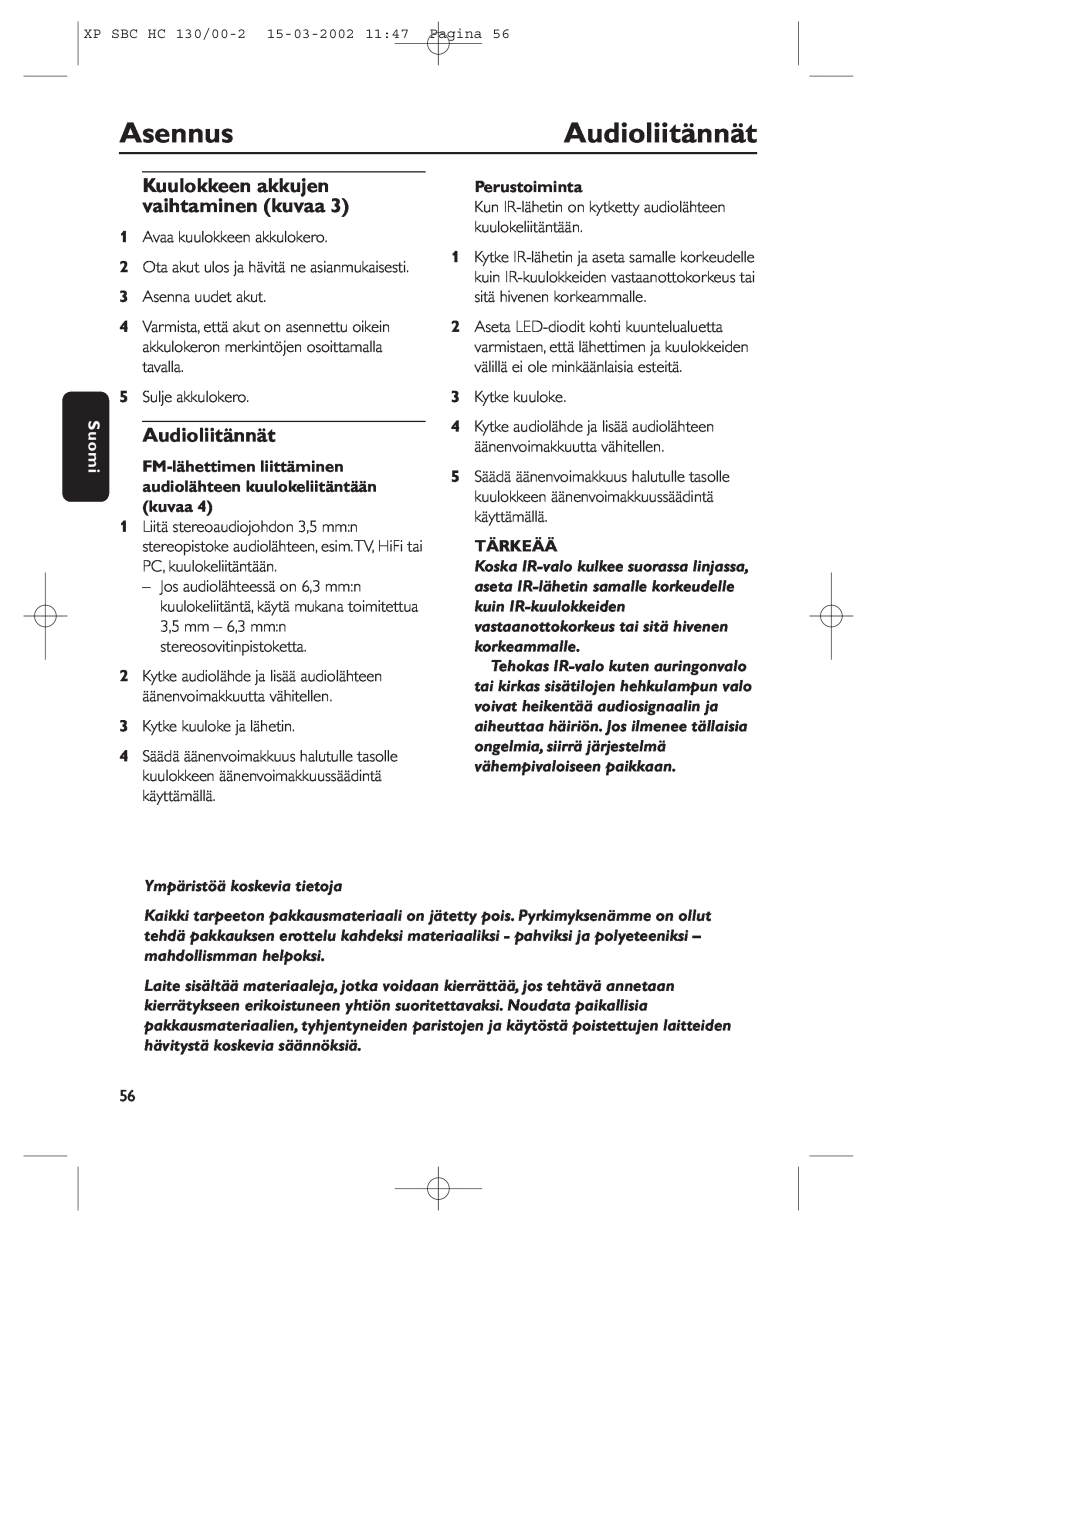 Philips SBC HC130 Asennus, Audioliitännät, Kuulokkeen akkujen, vaihtaminen kuvaa, Suomi, Perustoiminta, kuulokeliitäntään 